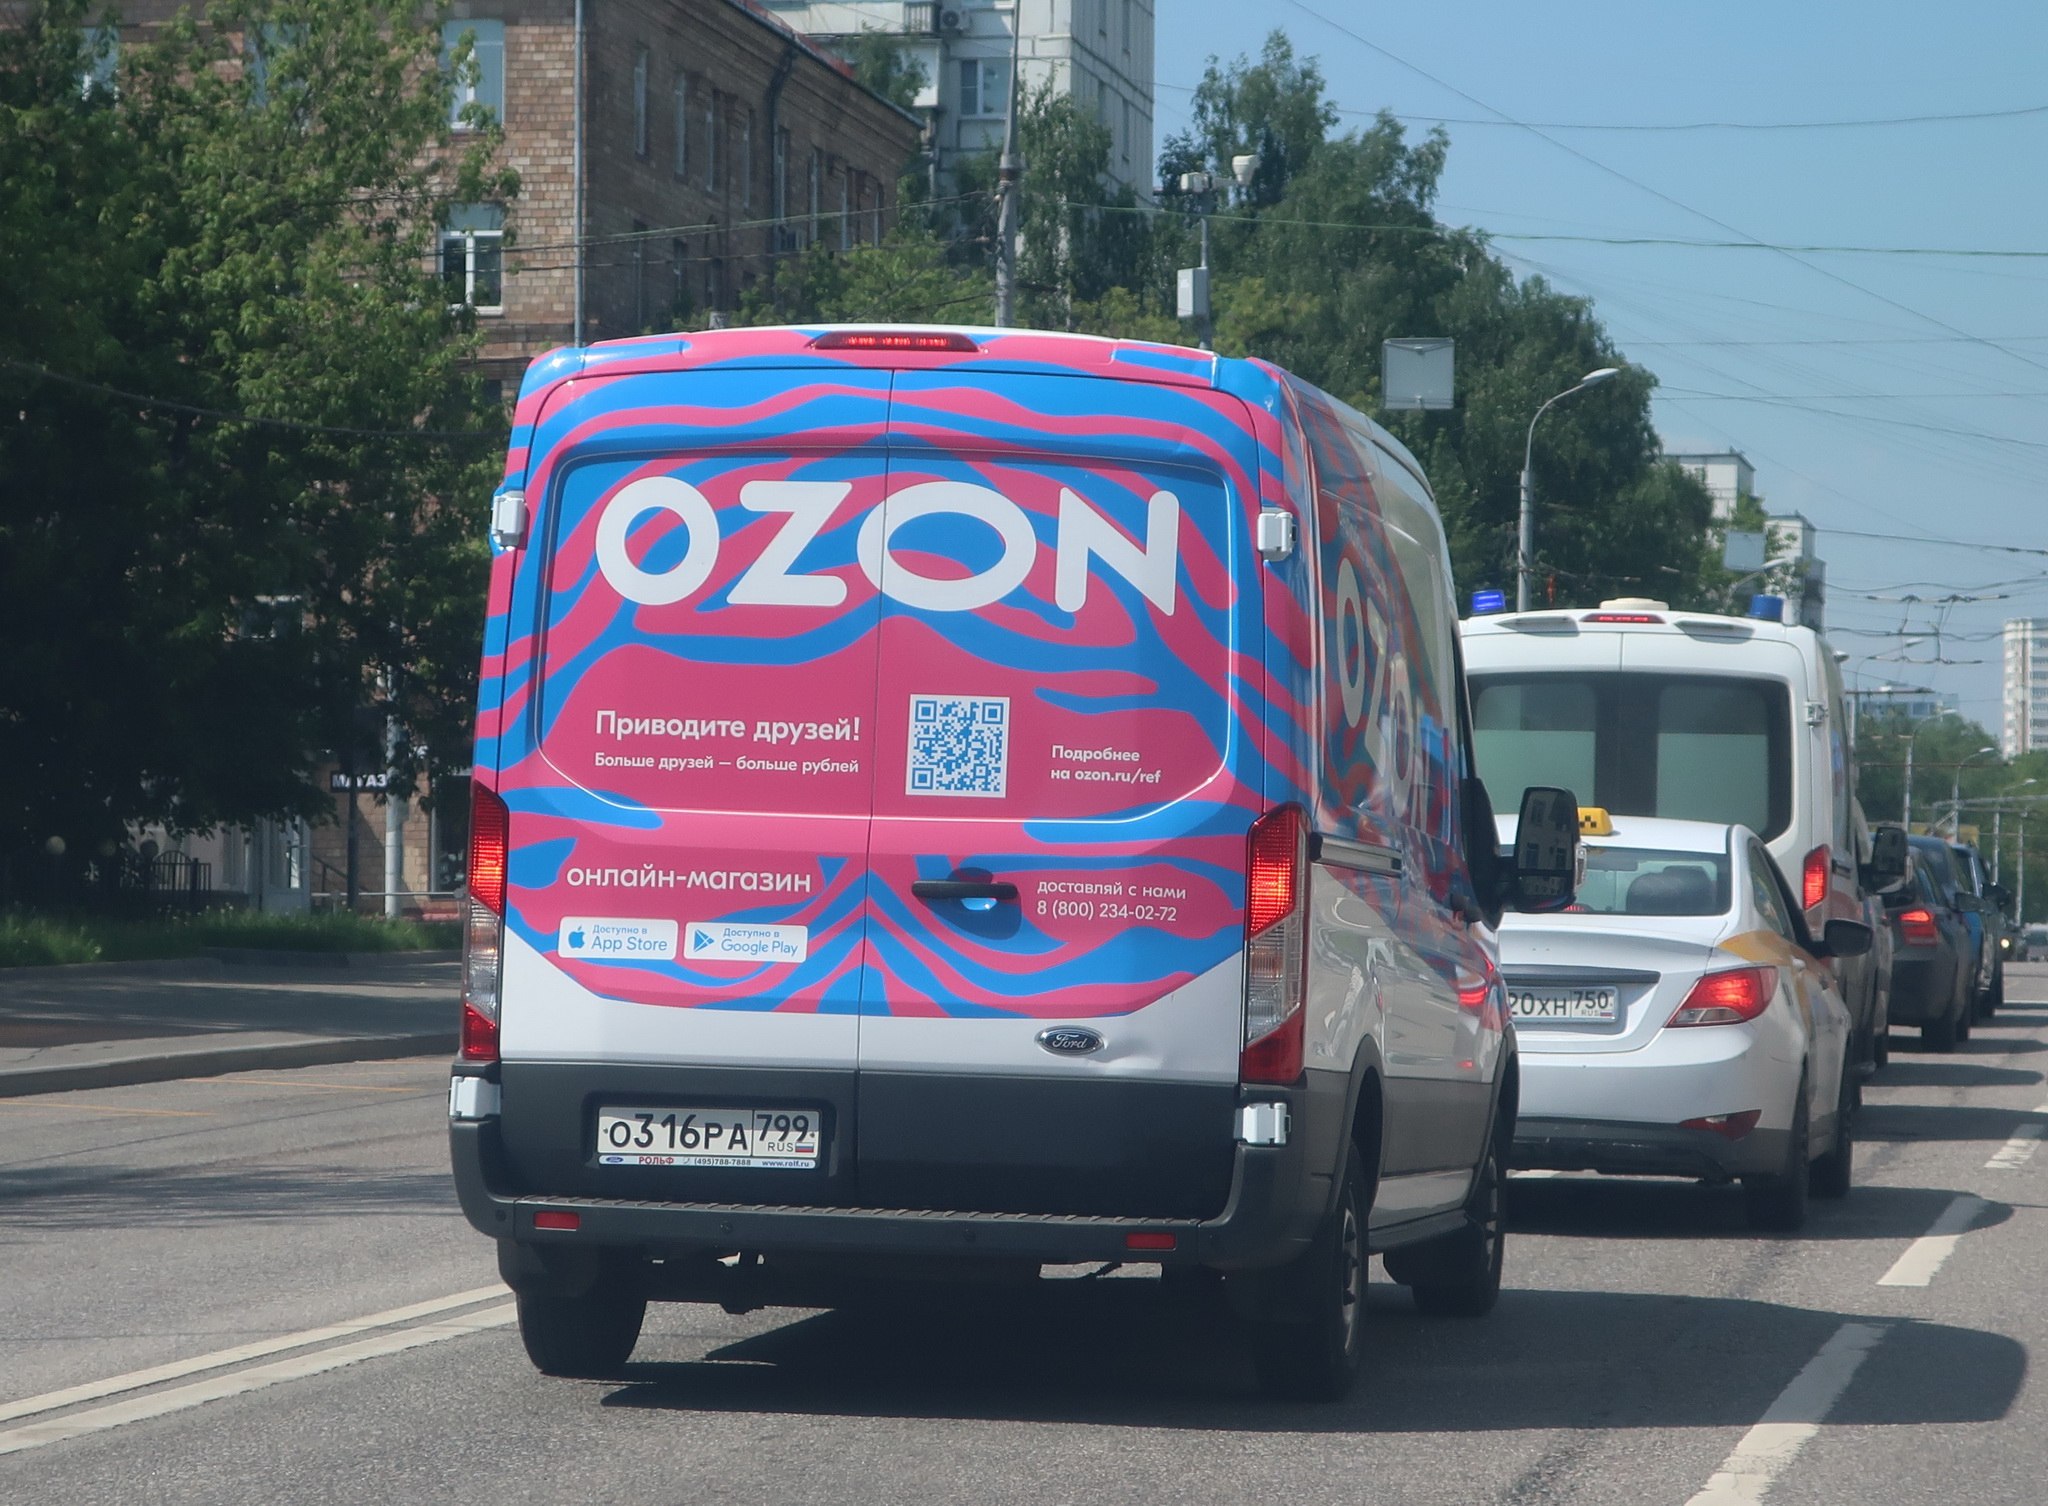 Машина через озон. Ford Transit OZON. Форд Транзит Озон. Брендирование авто OZON. Брендированные машины Озон.